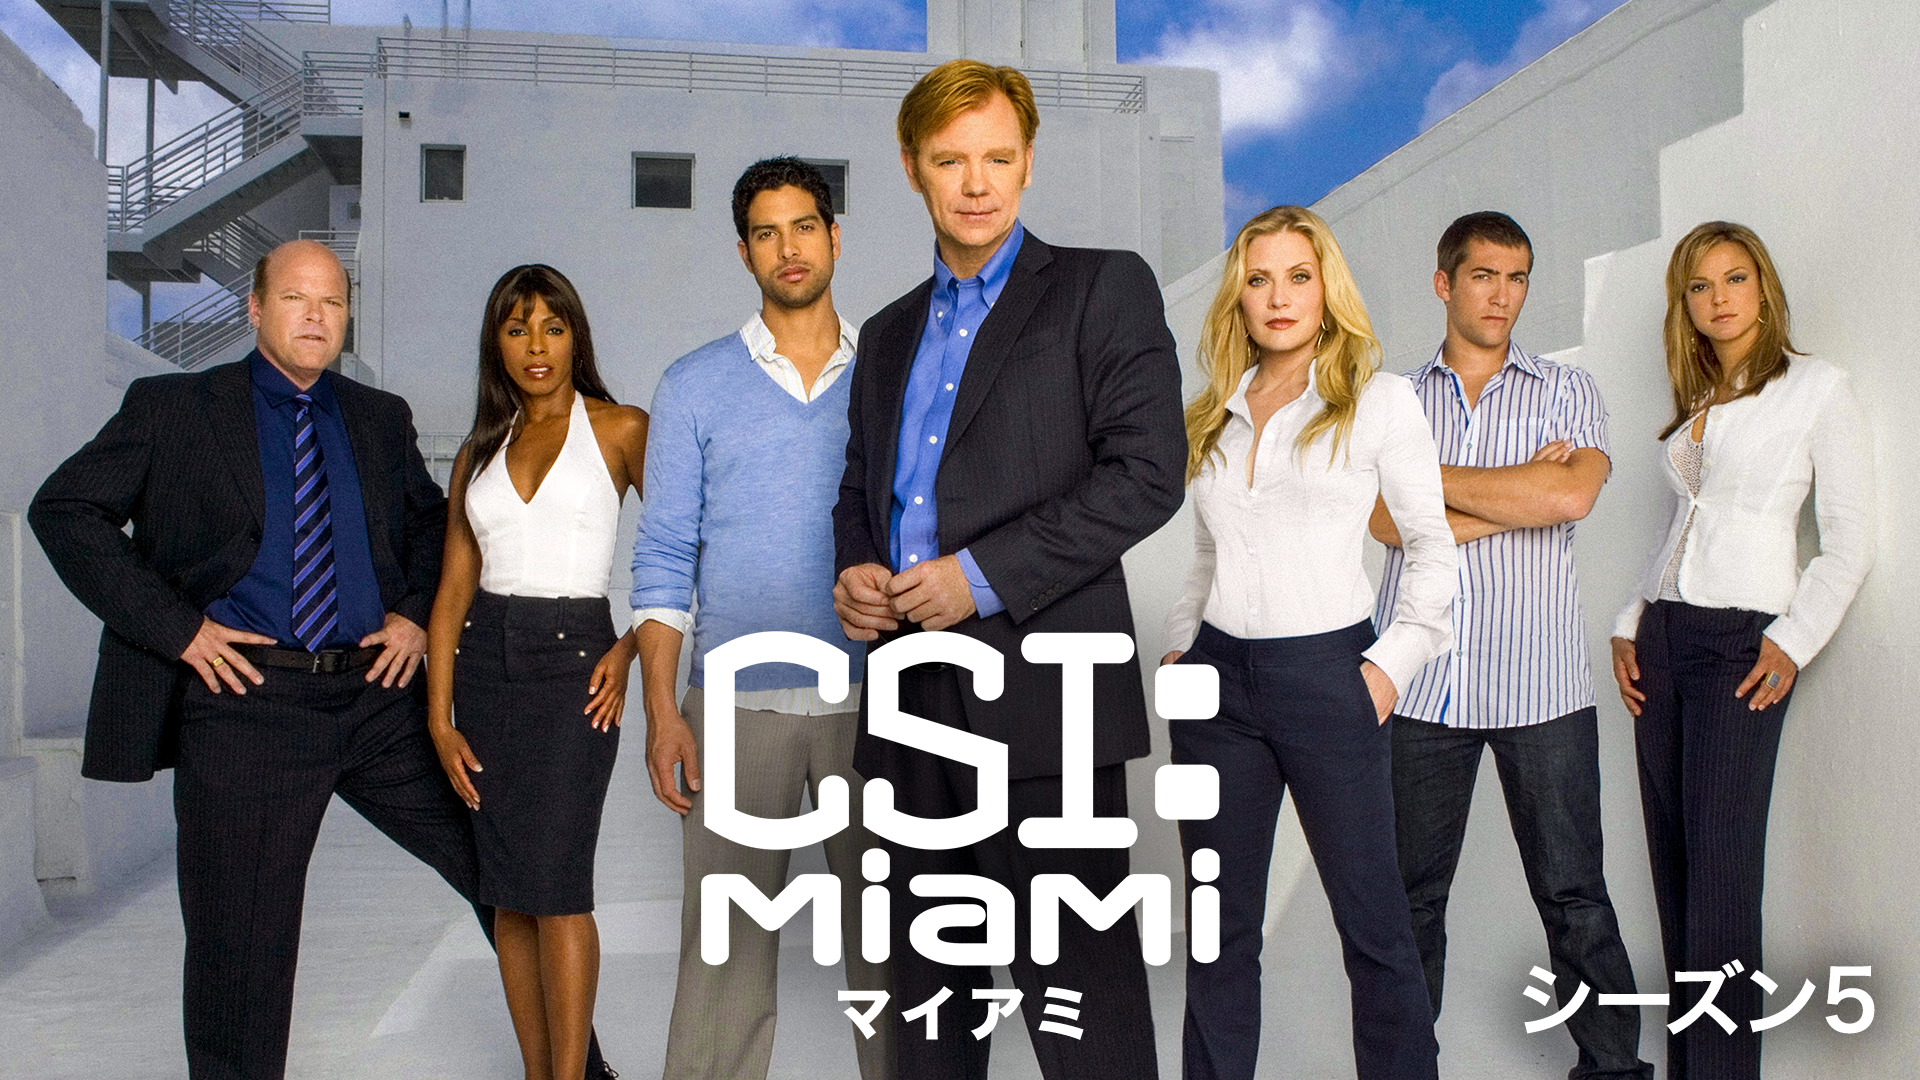 CSI：マイアミ シーズン5(海外ドラマ / 2006) - 動画配信 | U-NEXT 31